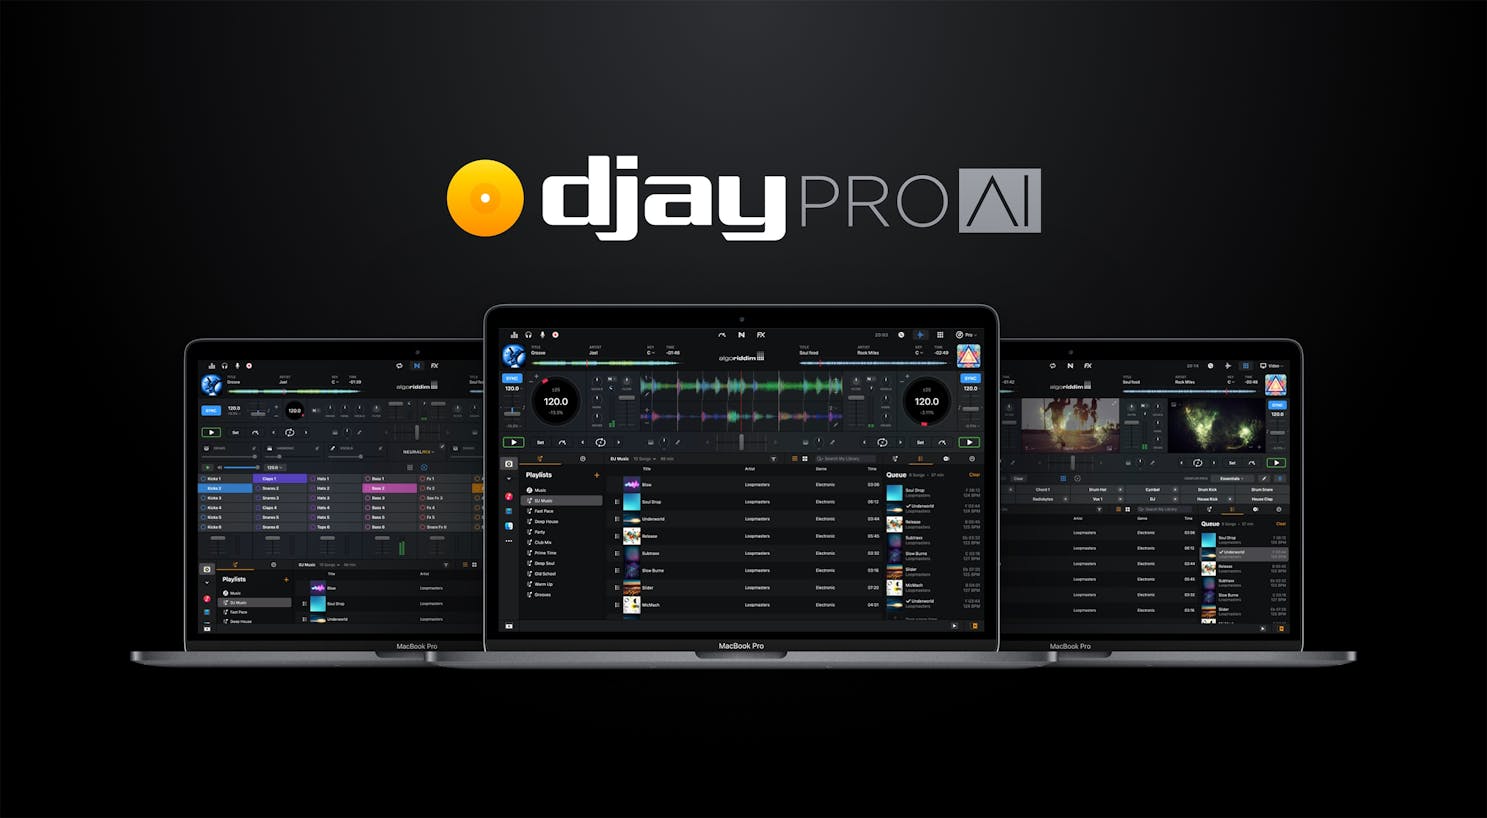 DJay Pro - Neuralmix